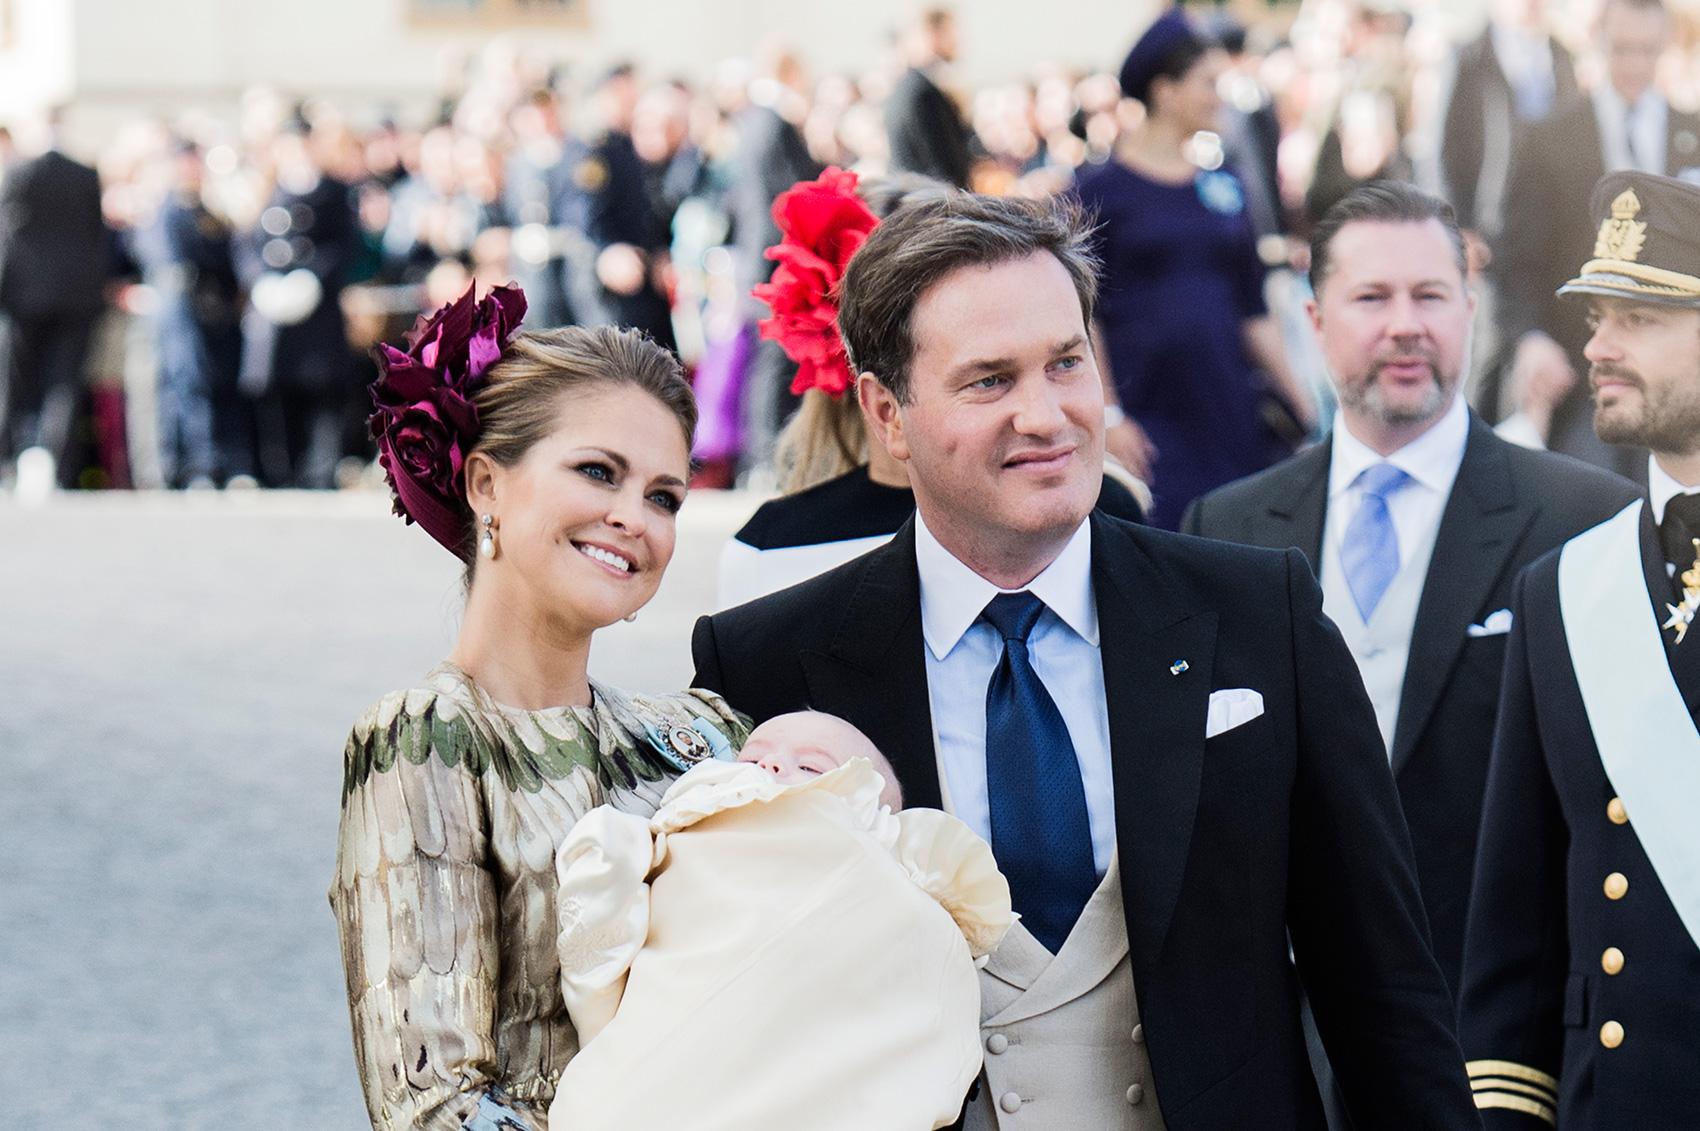 Prinsessan Madeleine och maken Chris O’Neill kommer till Nobelfesten.